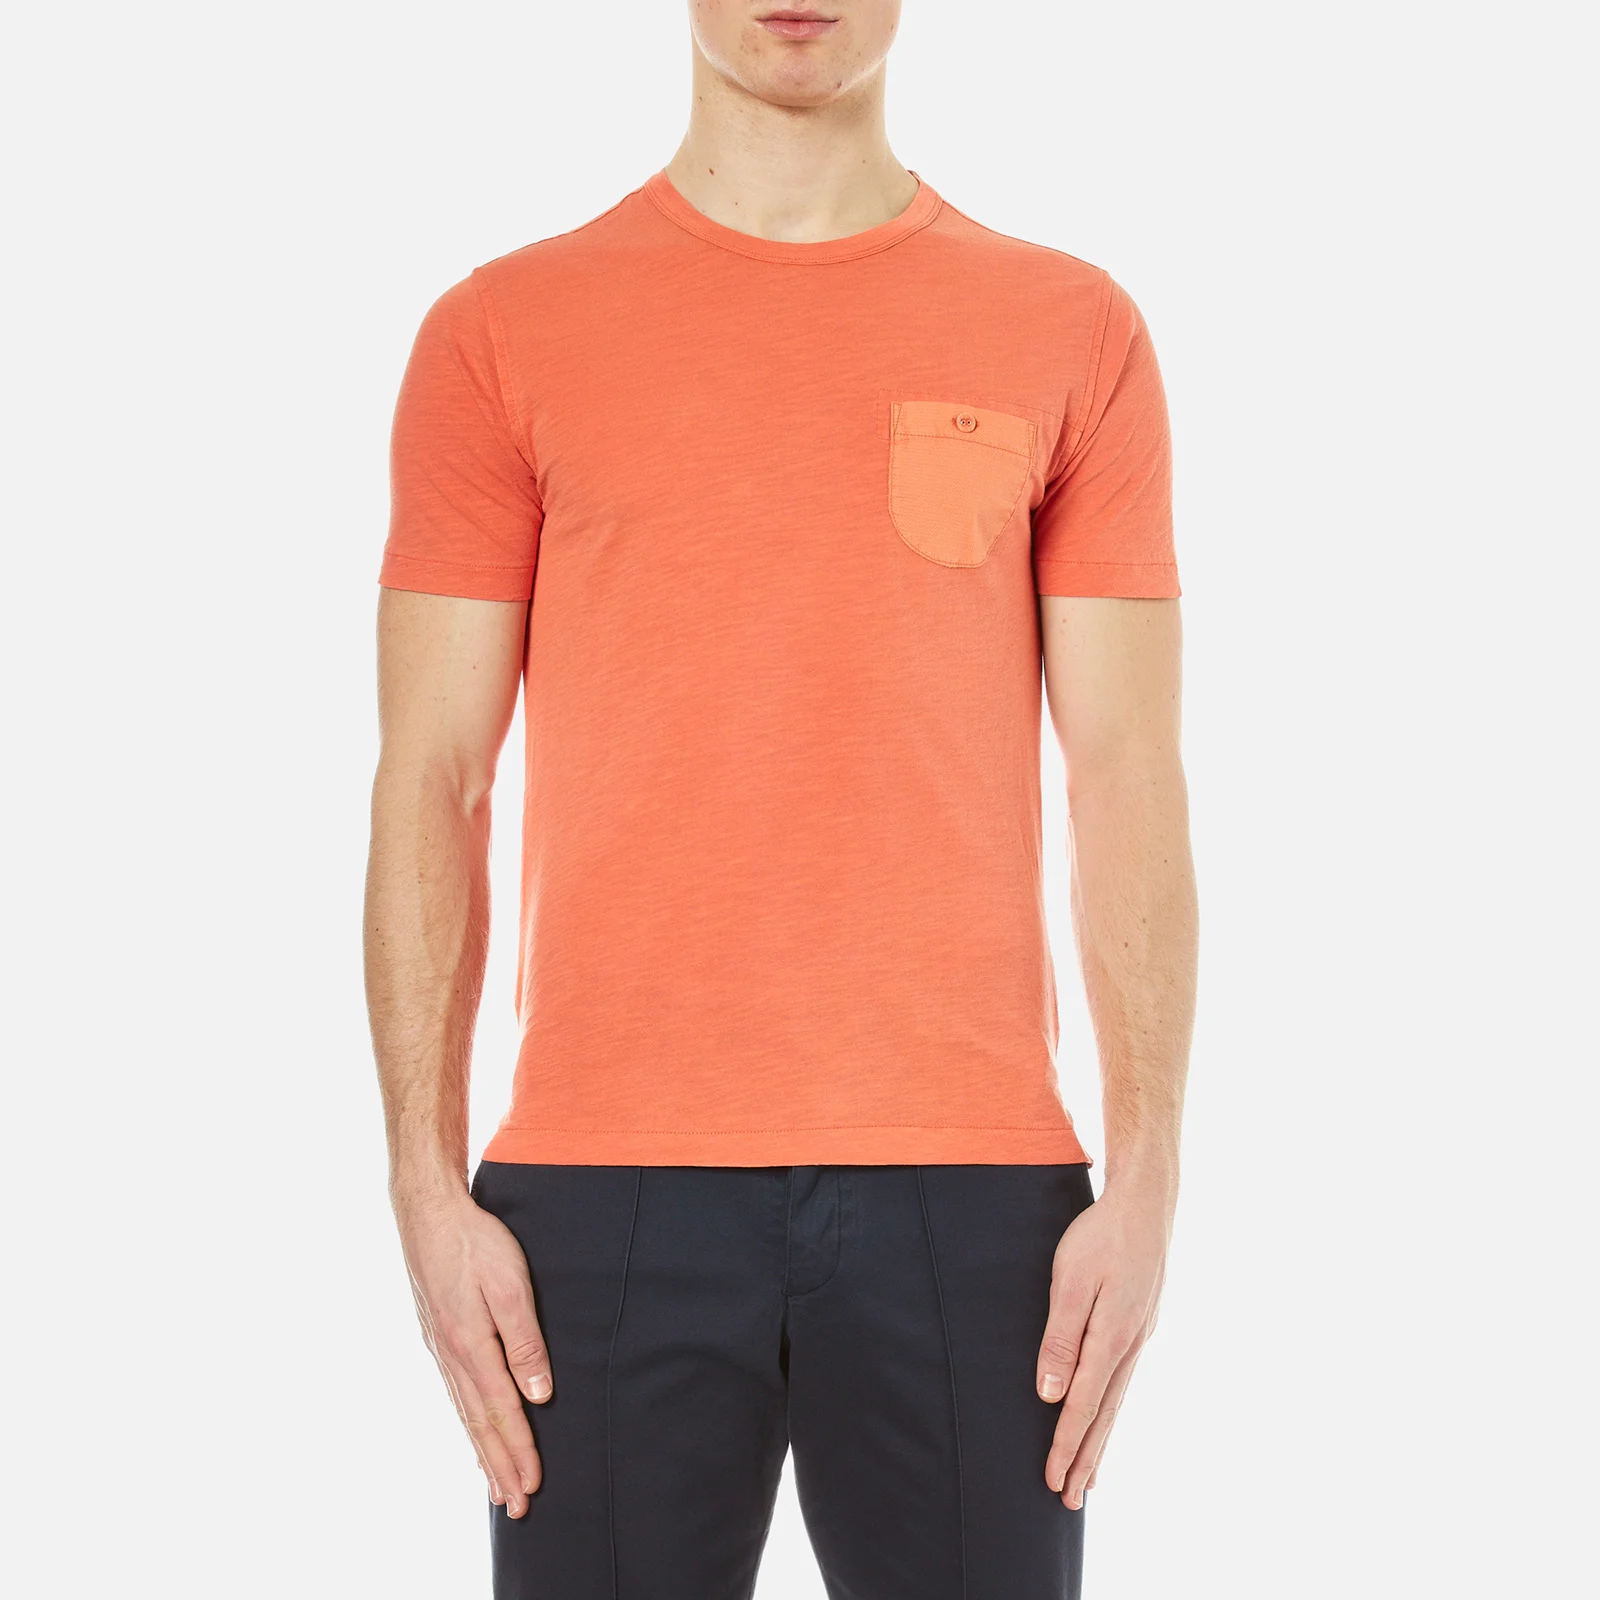 YMC Men's Dead End T-Shirt - Orange Image 1